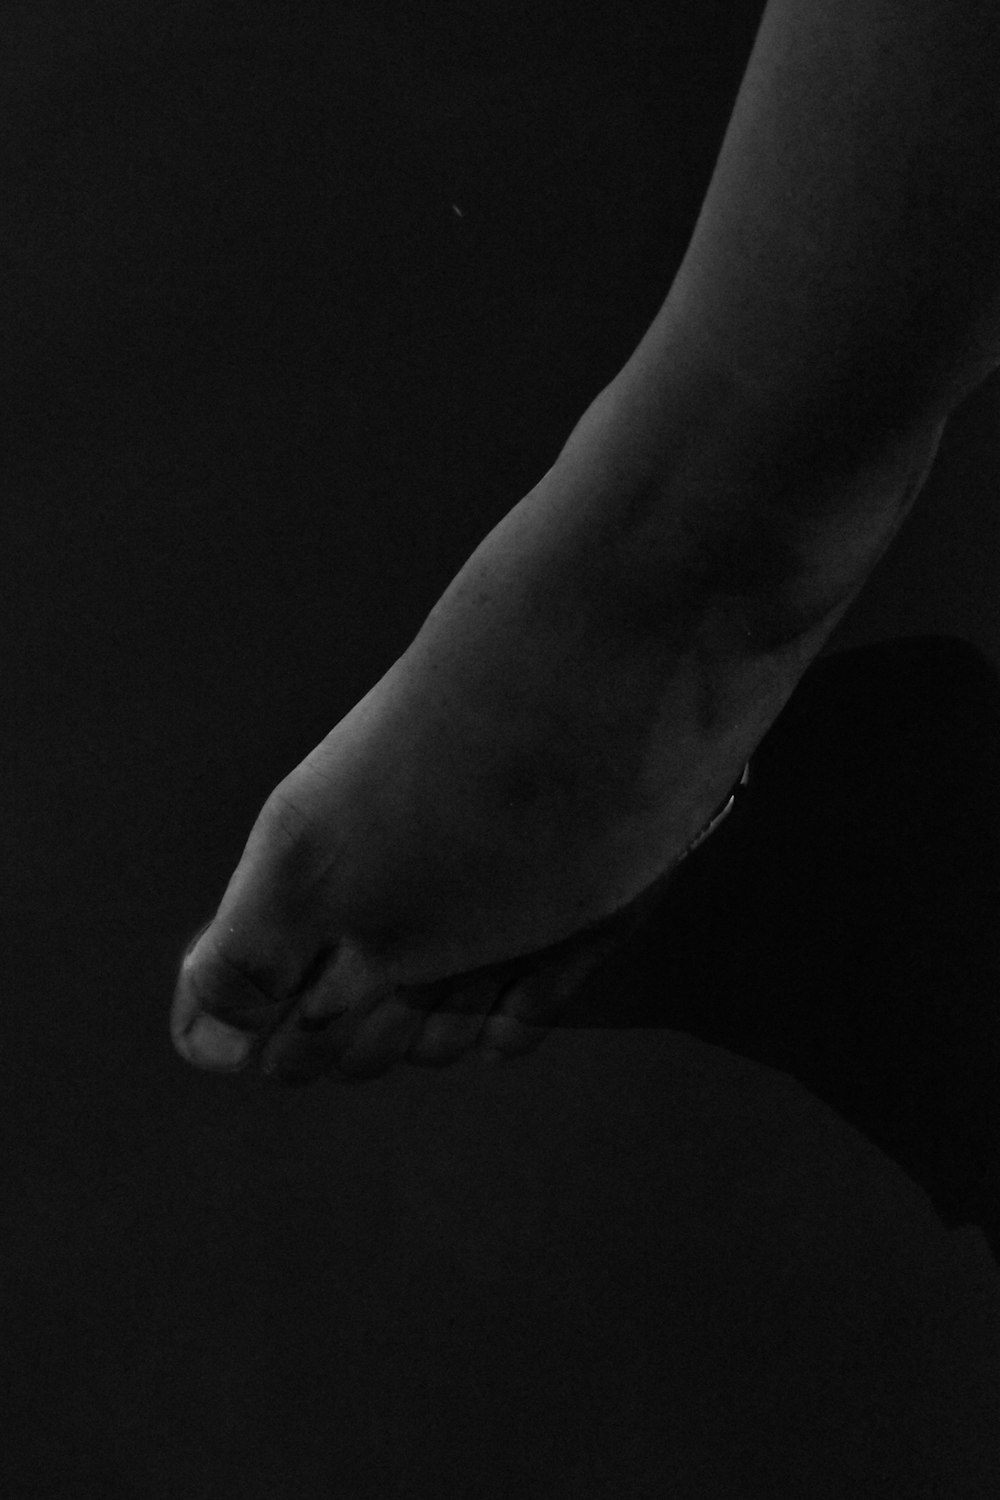 Una foto en blanco y negro del pie de una persona